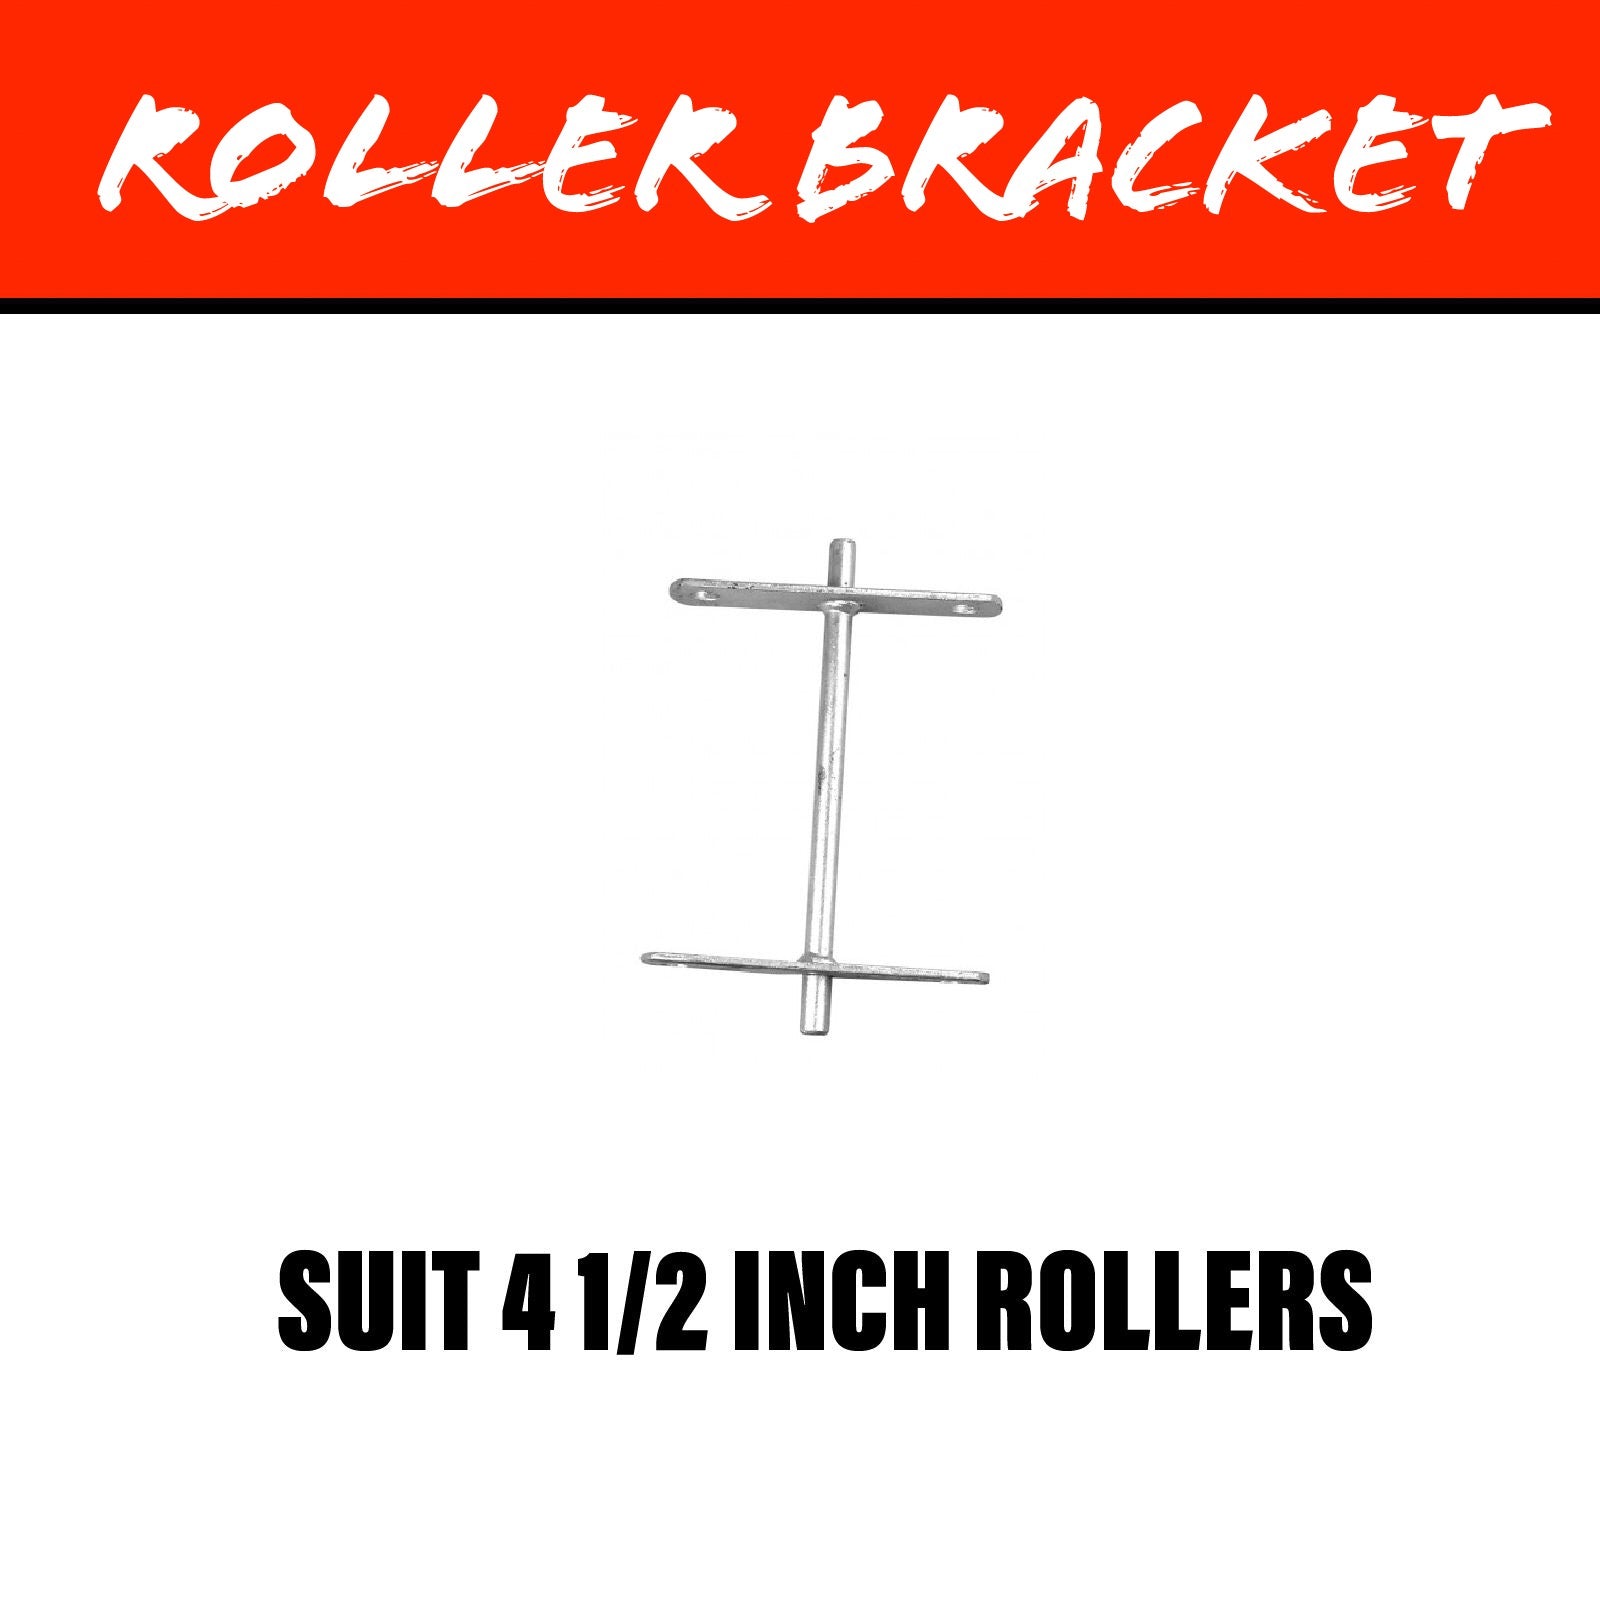 4 1/2 INCH TANDEM Roller Bracket